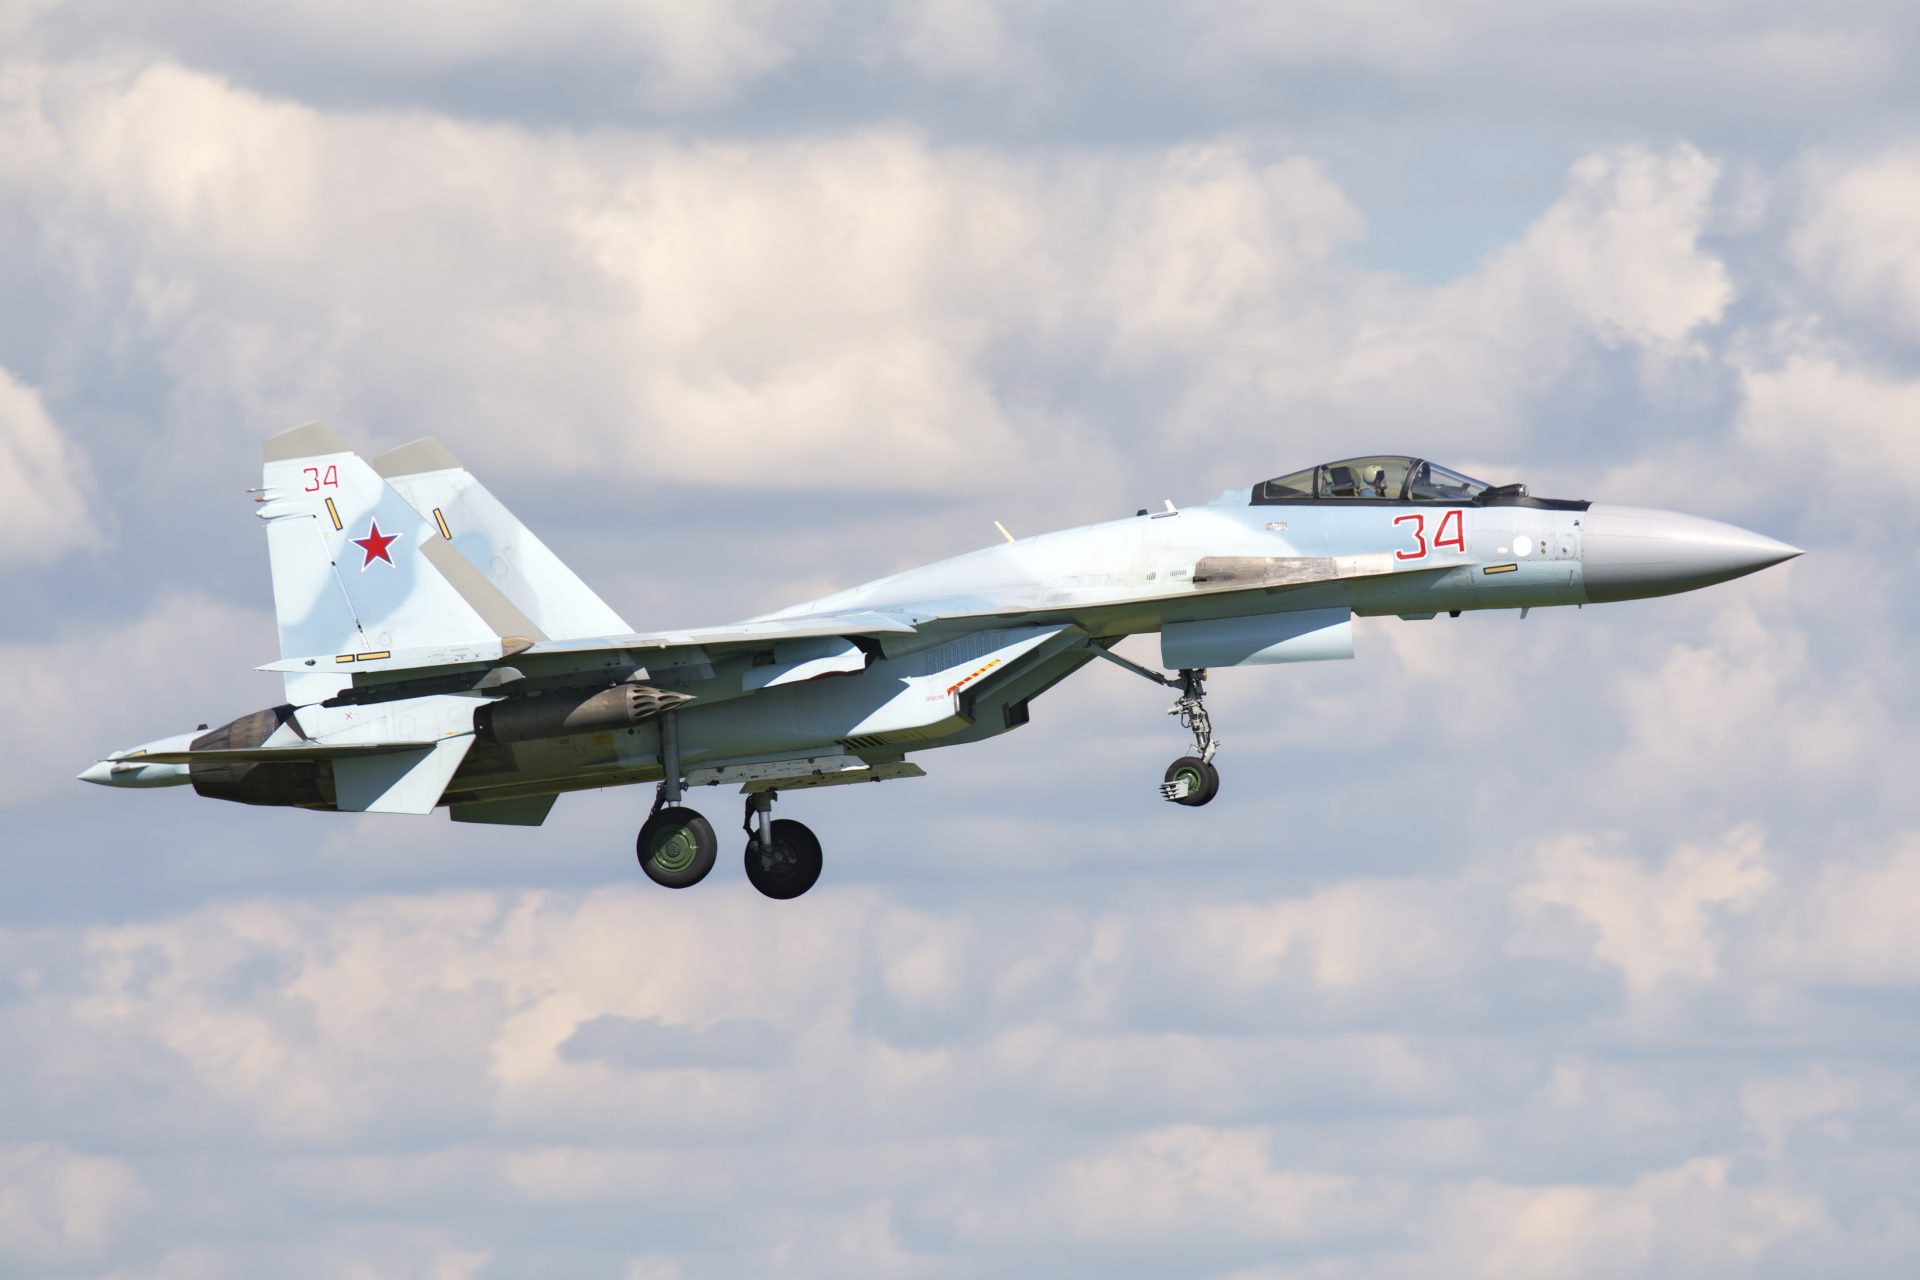 The Su-35S Flanker-E